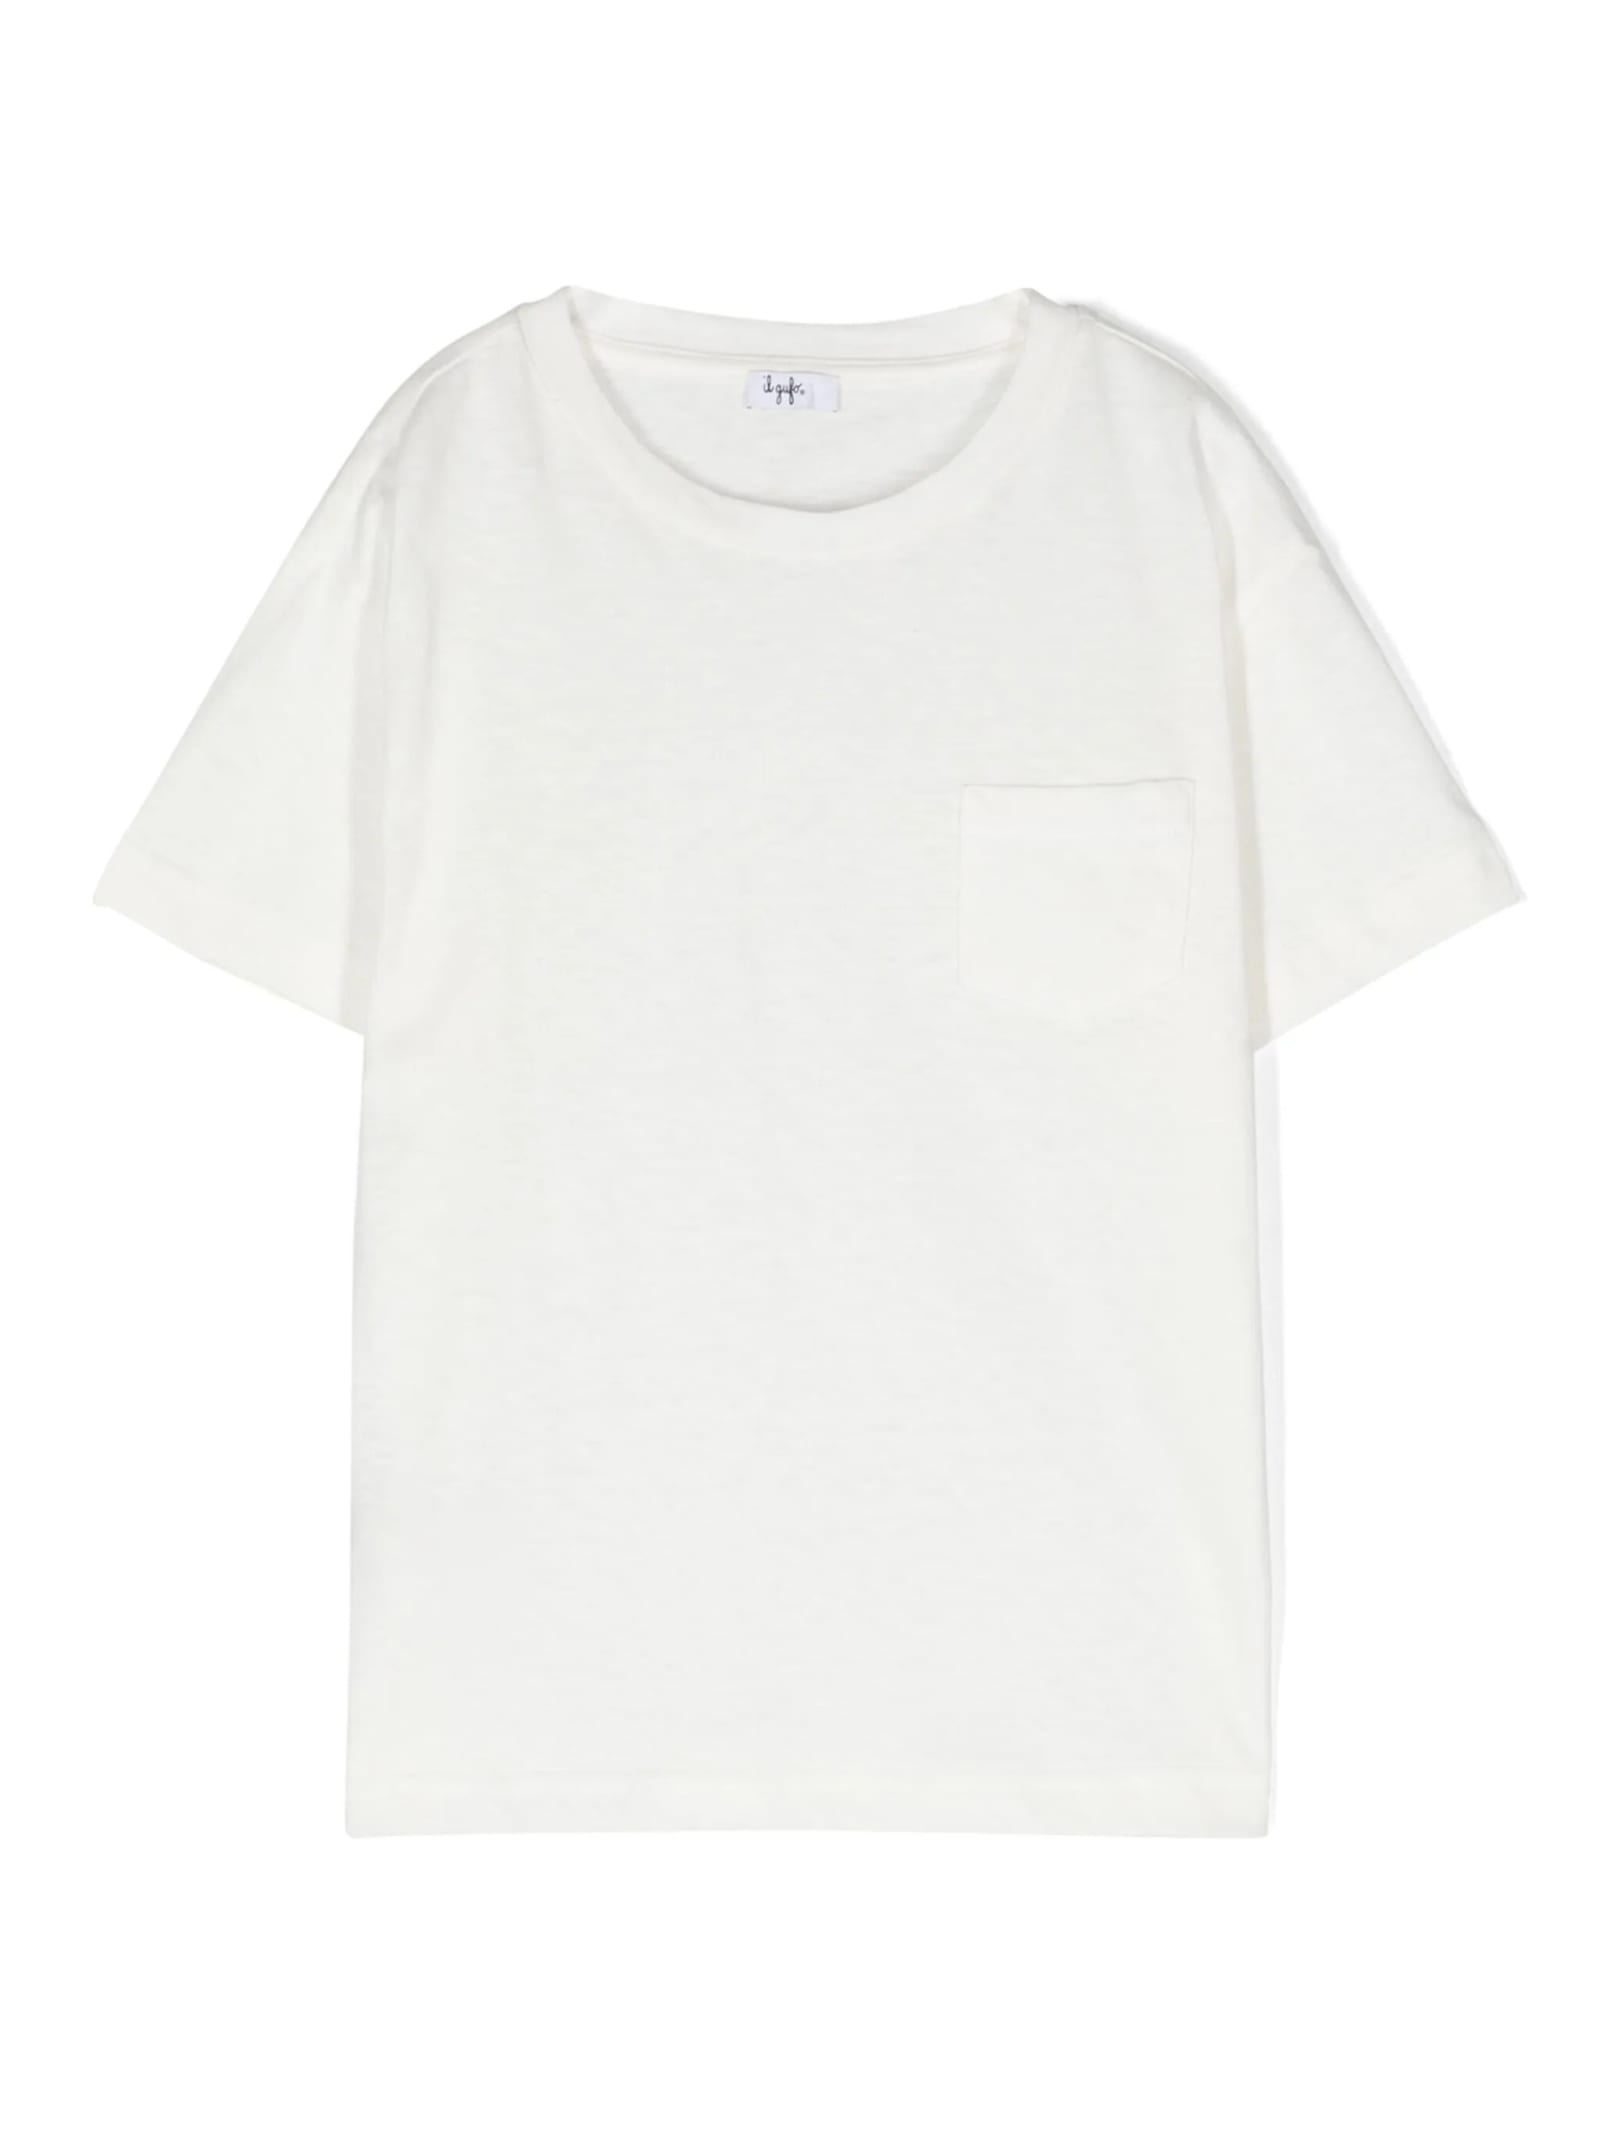 Shop Il Gufo White Cotton And Linen T-shirt